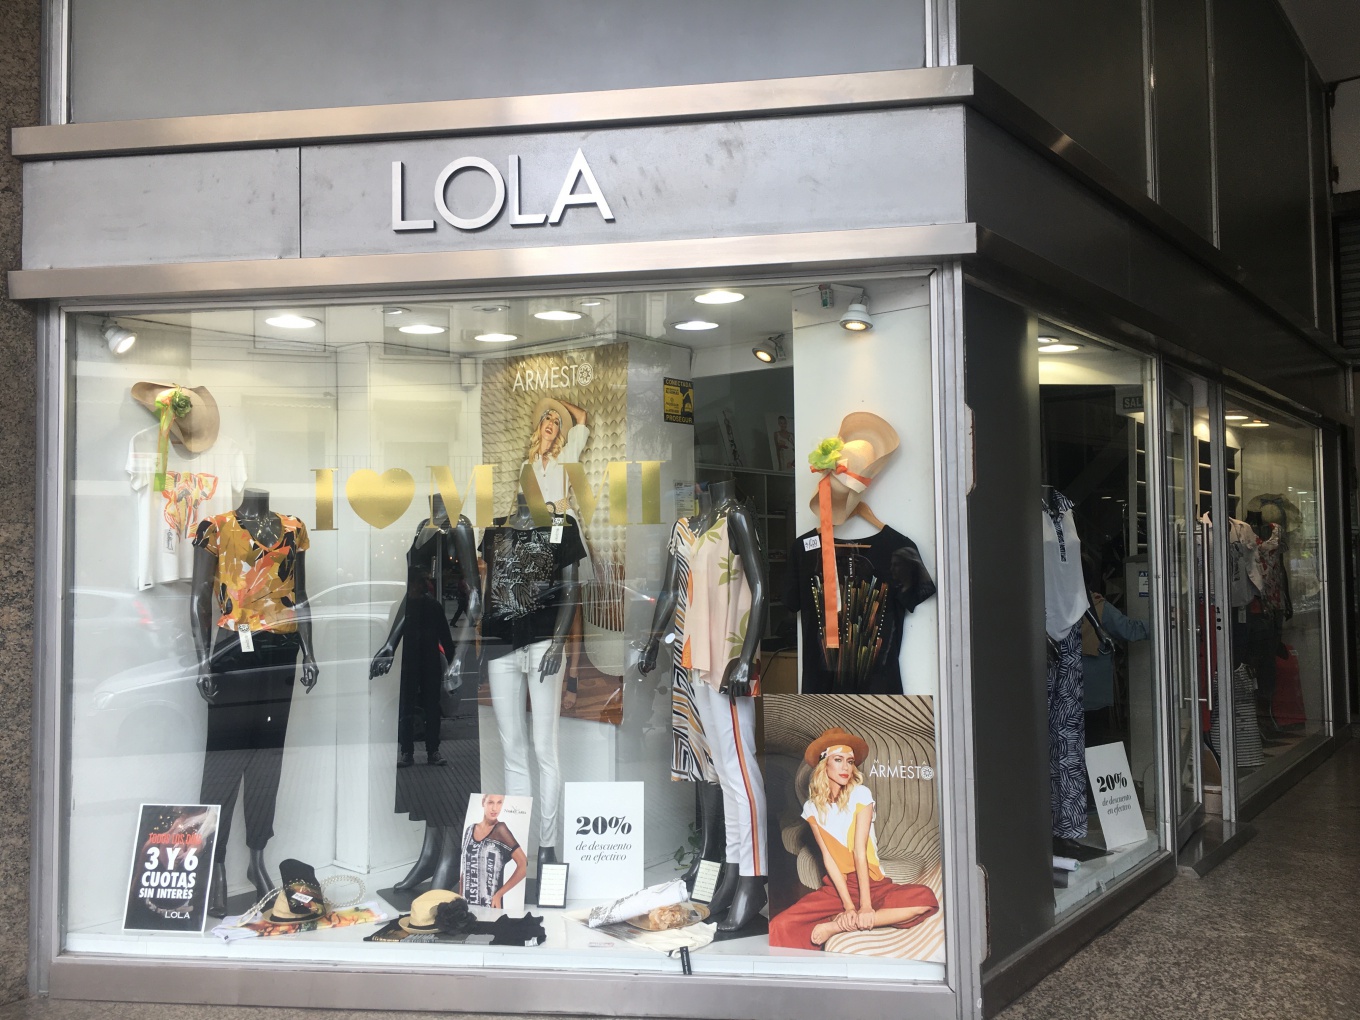 Lola Paris Ropa Shop - 1688679106